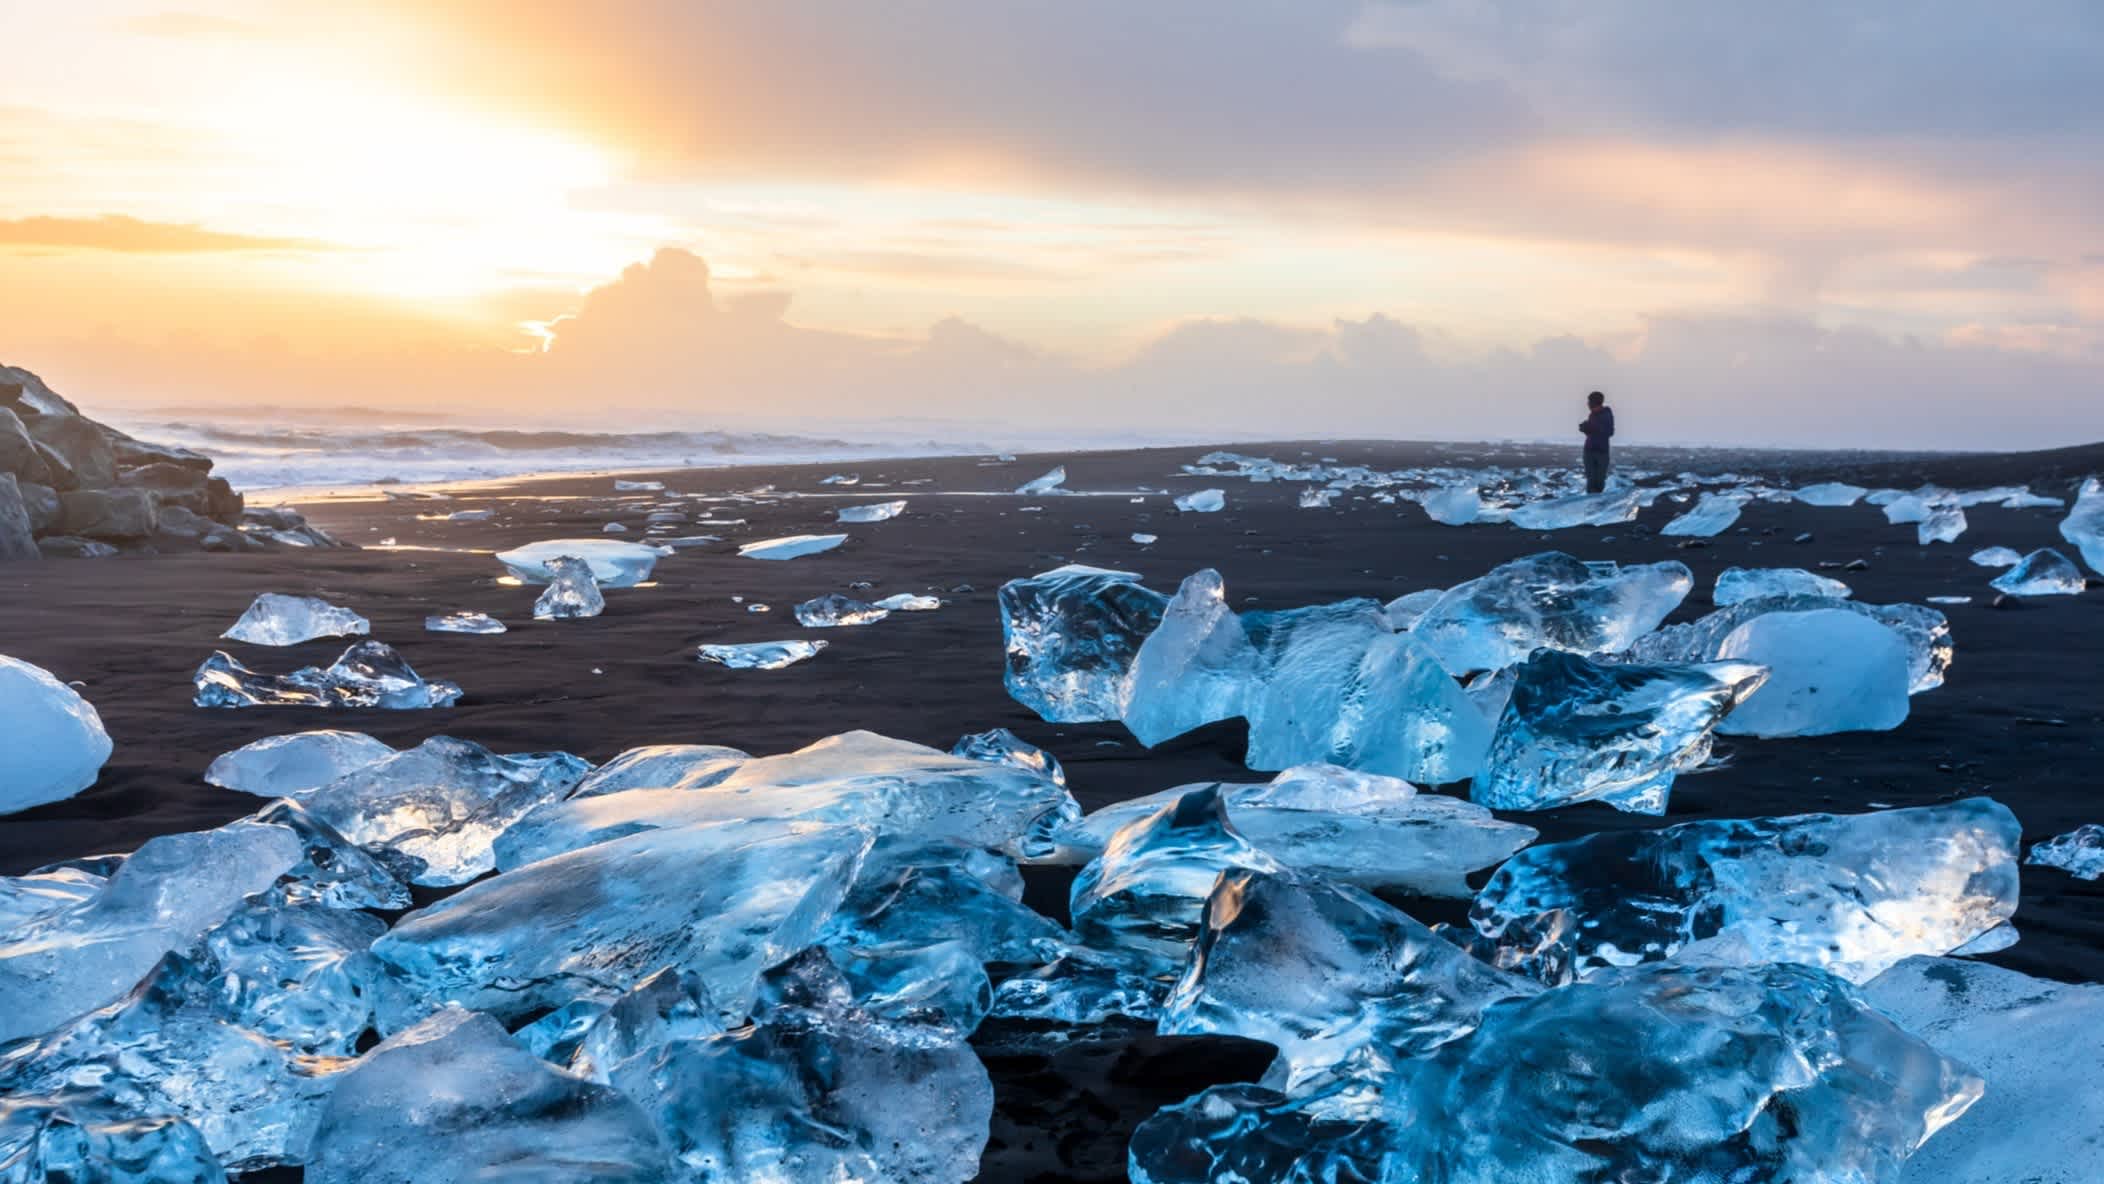 Diamond Beach in Jokulsarlon, Island, bei Sonnenuntergang und mit blauen Eiskristallen, die auf dem schwarzen Sandstrand glitzernd funkeln.
